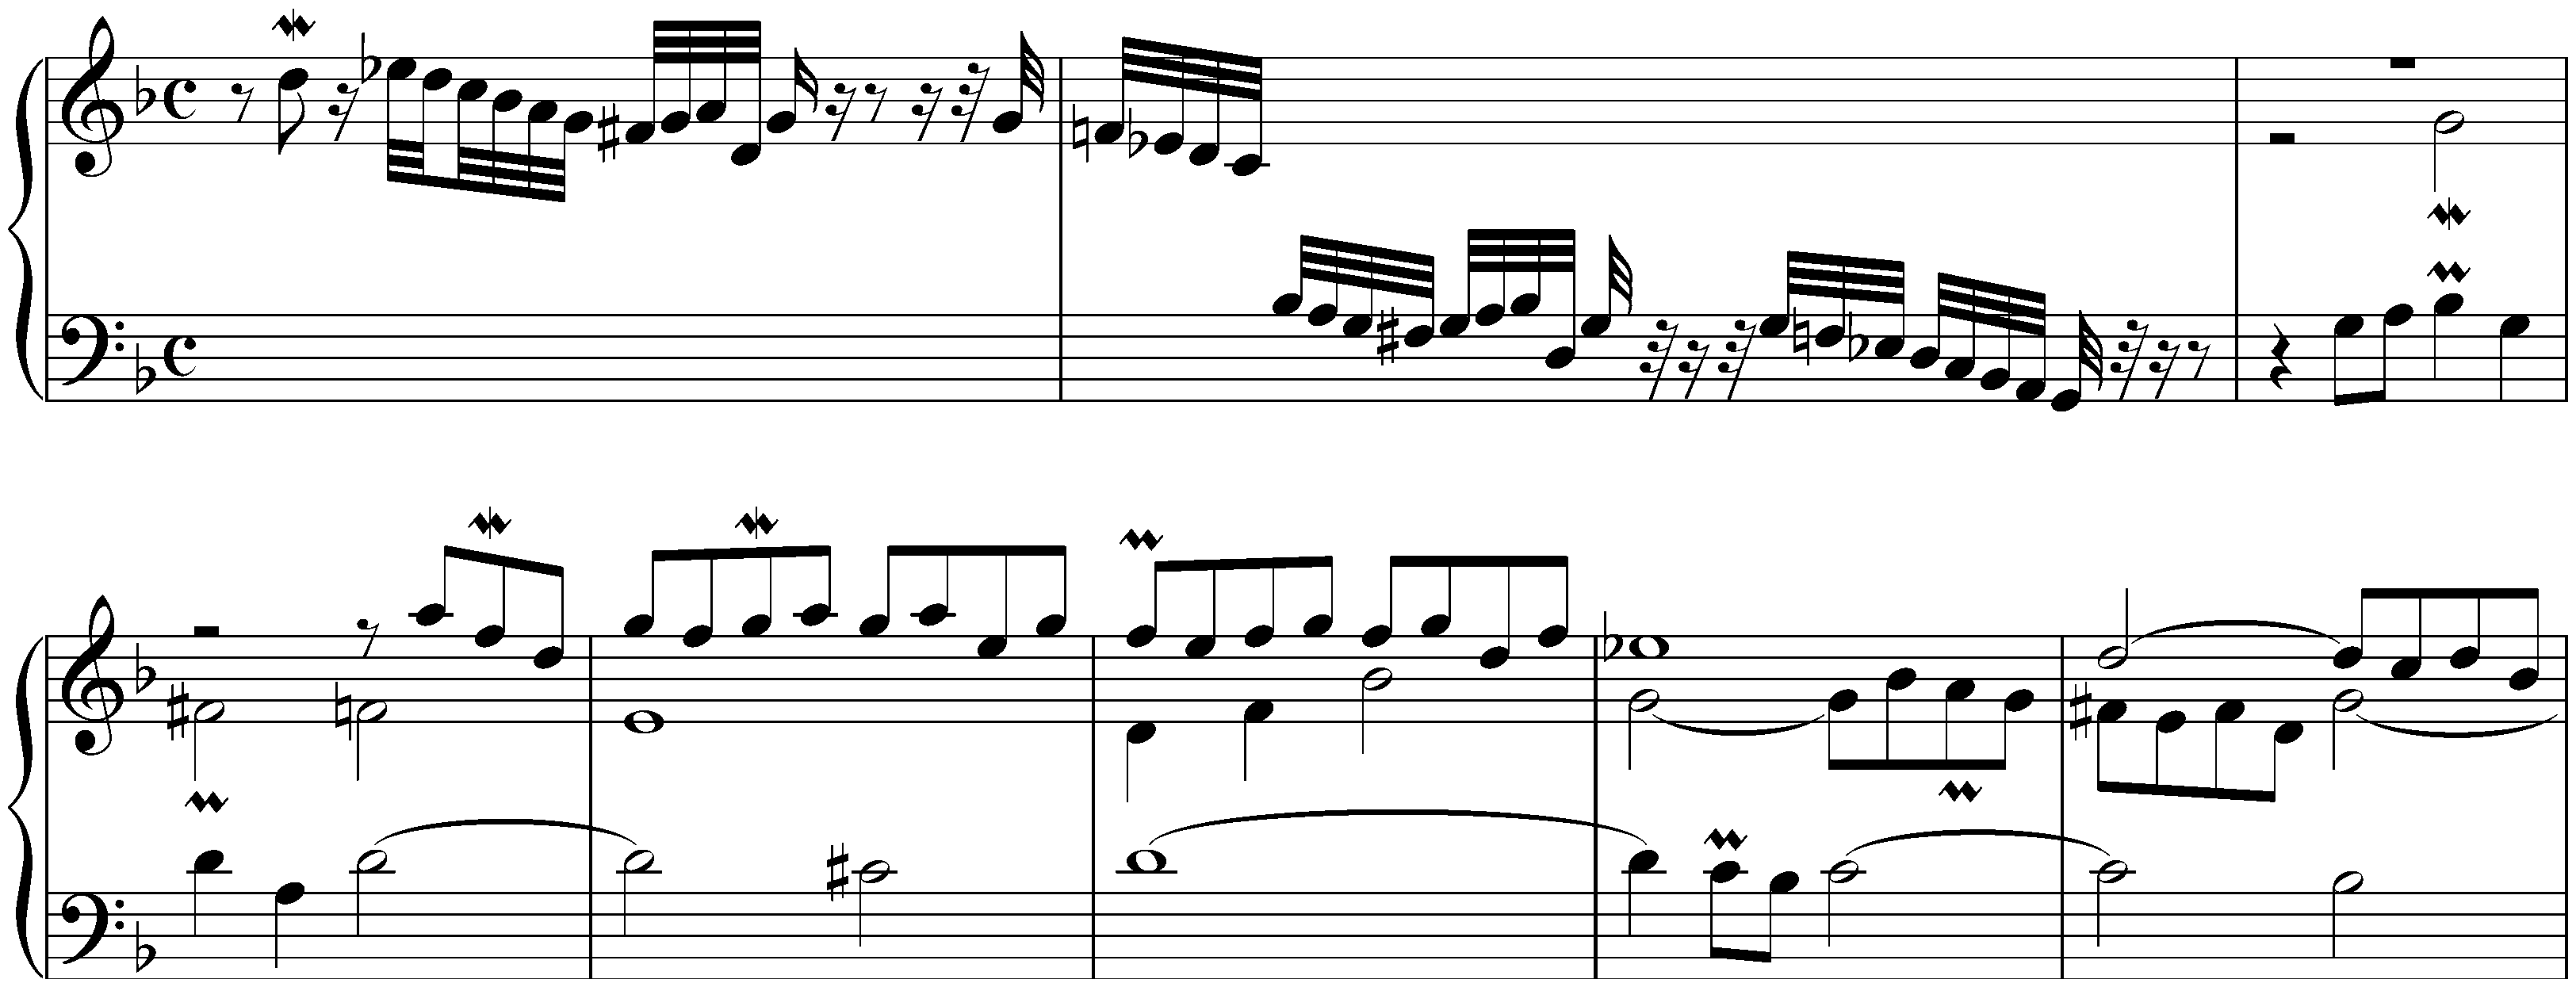 Fantasia in G minor, BWV 917